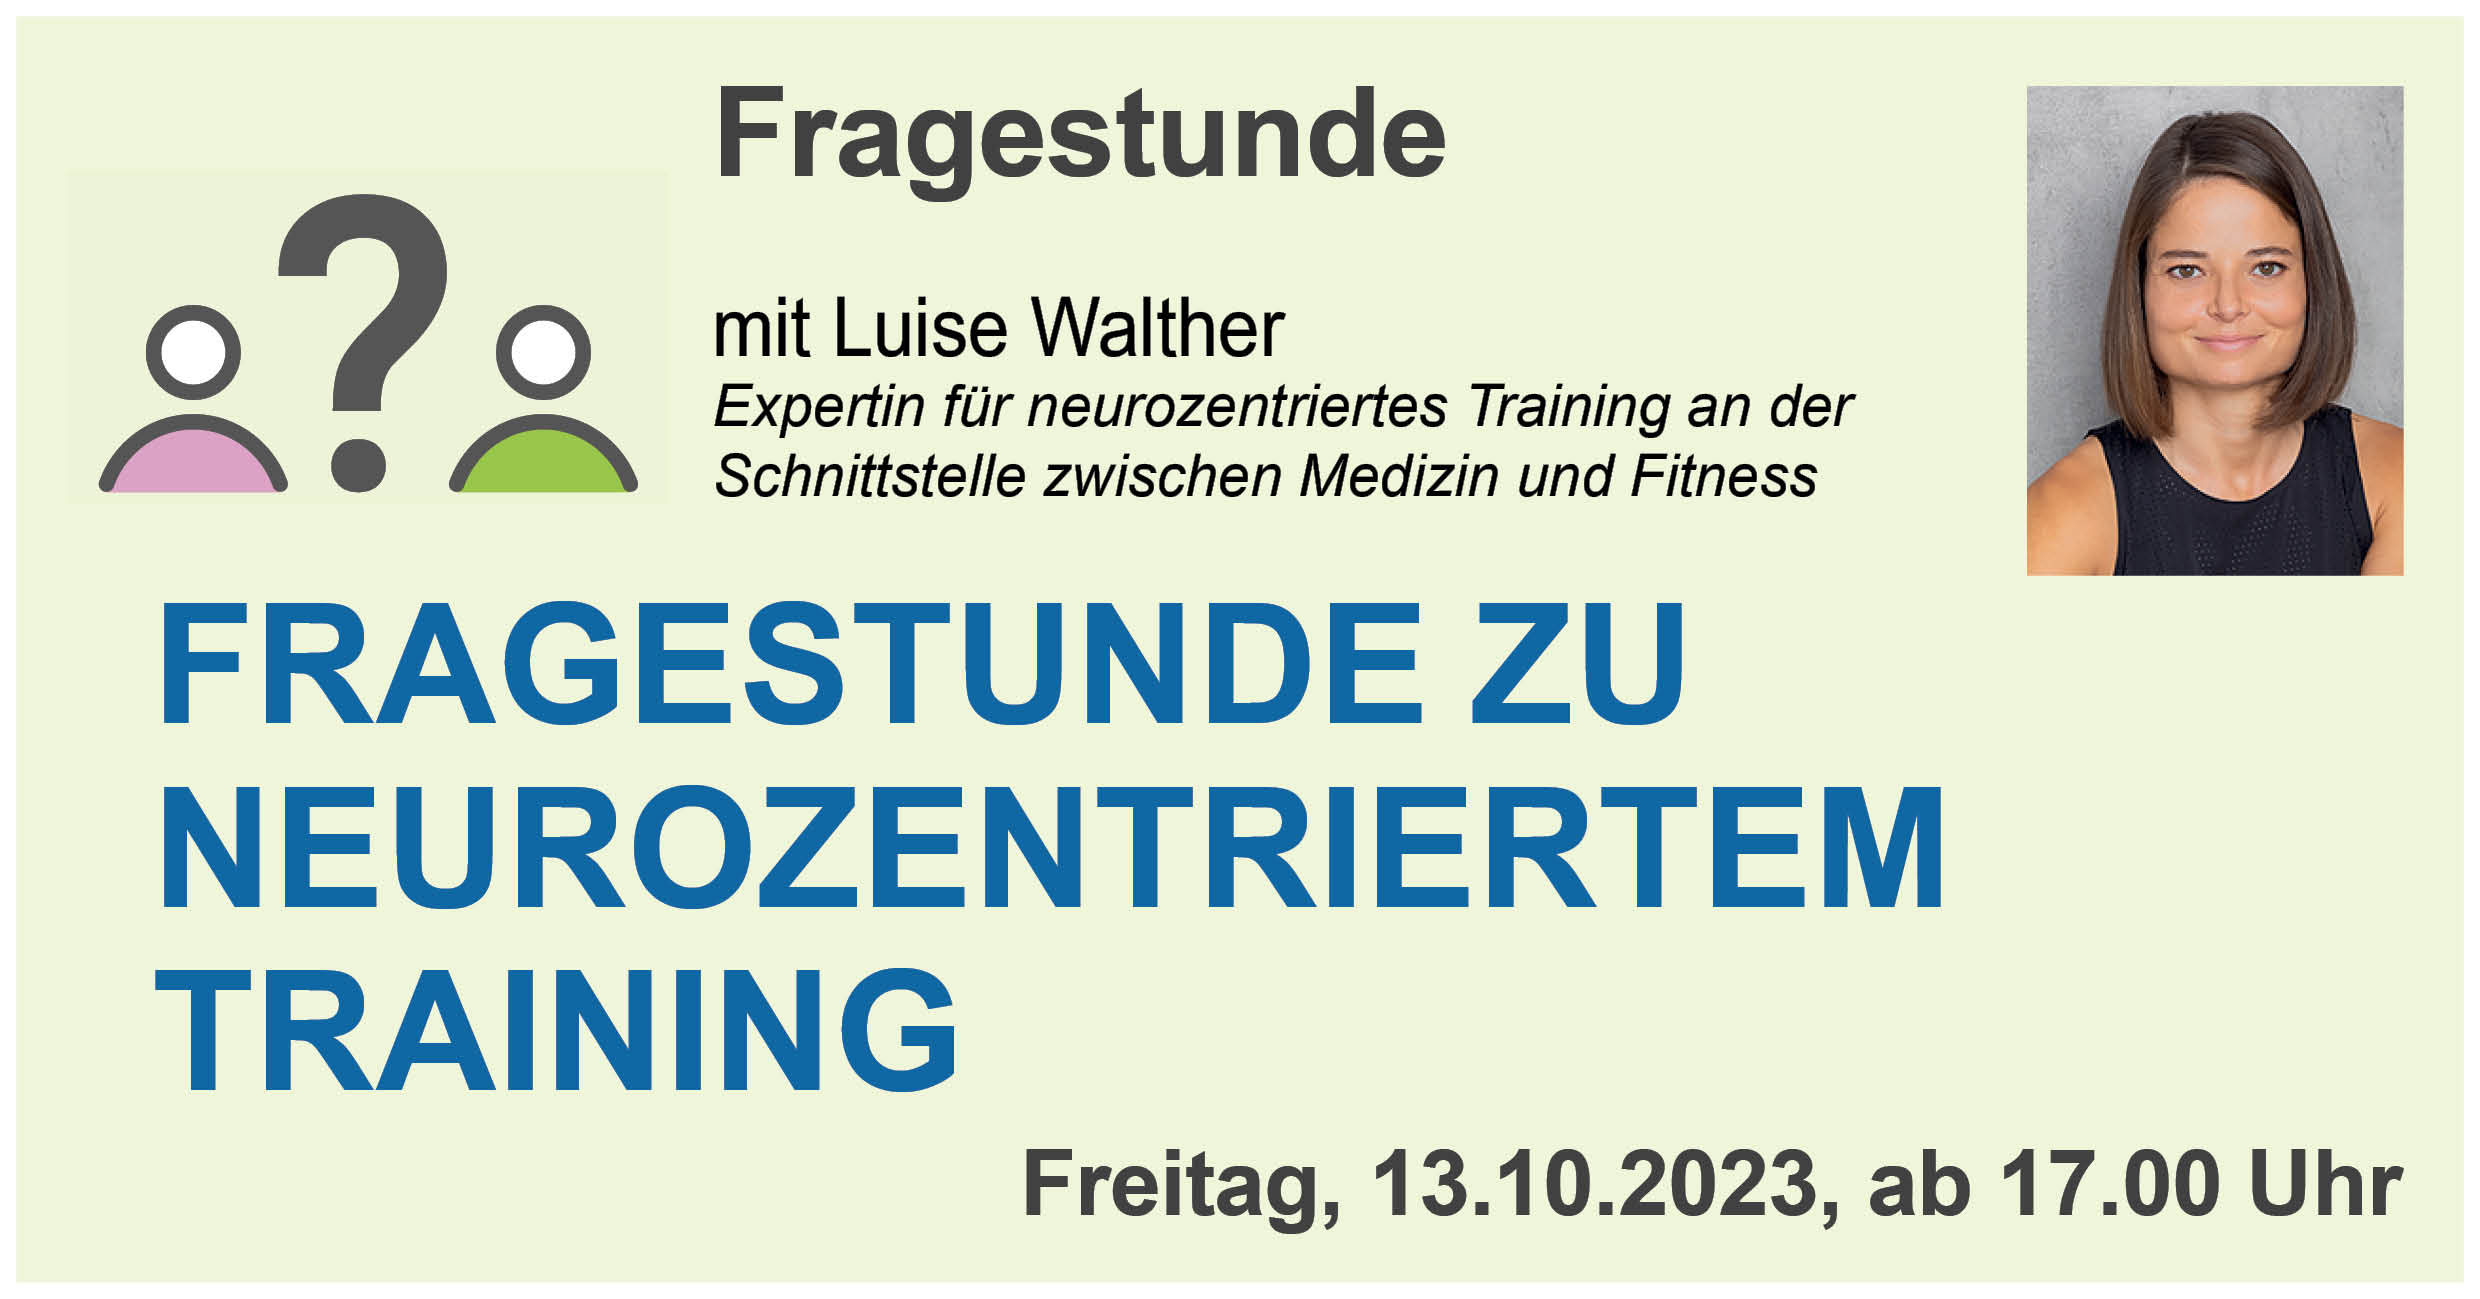 Online Fragestunde mit Luise Walther zu neurozentrischem Training